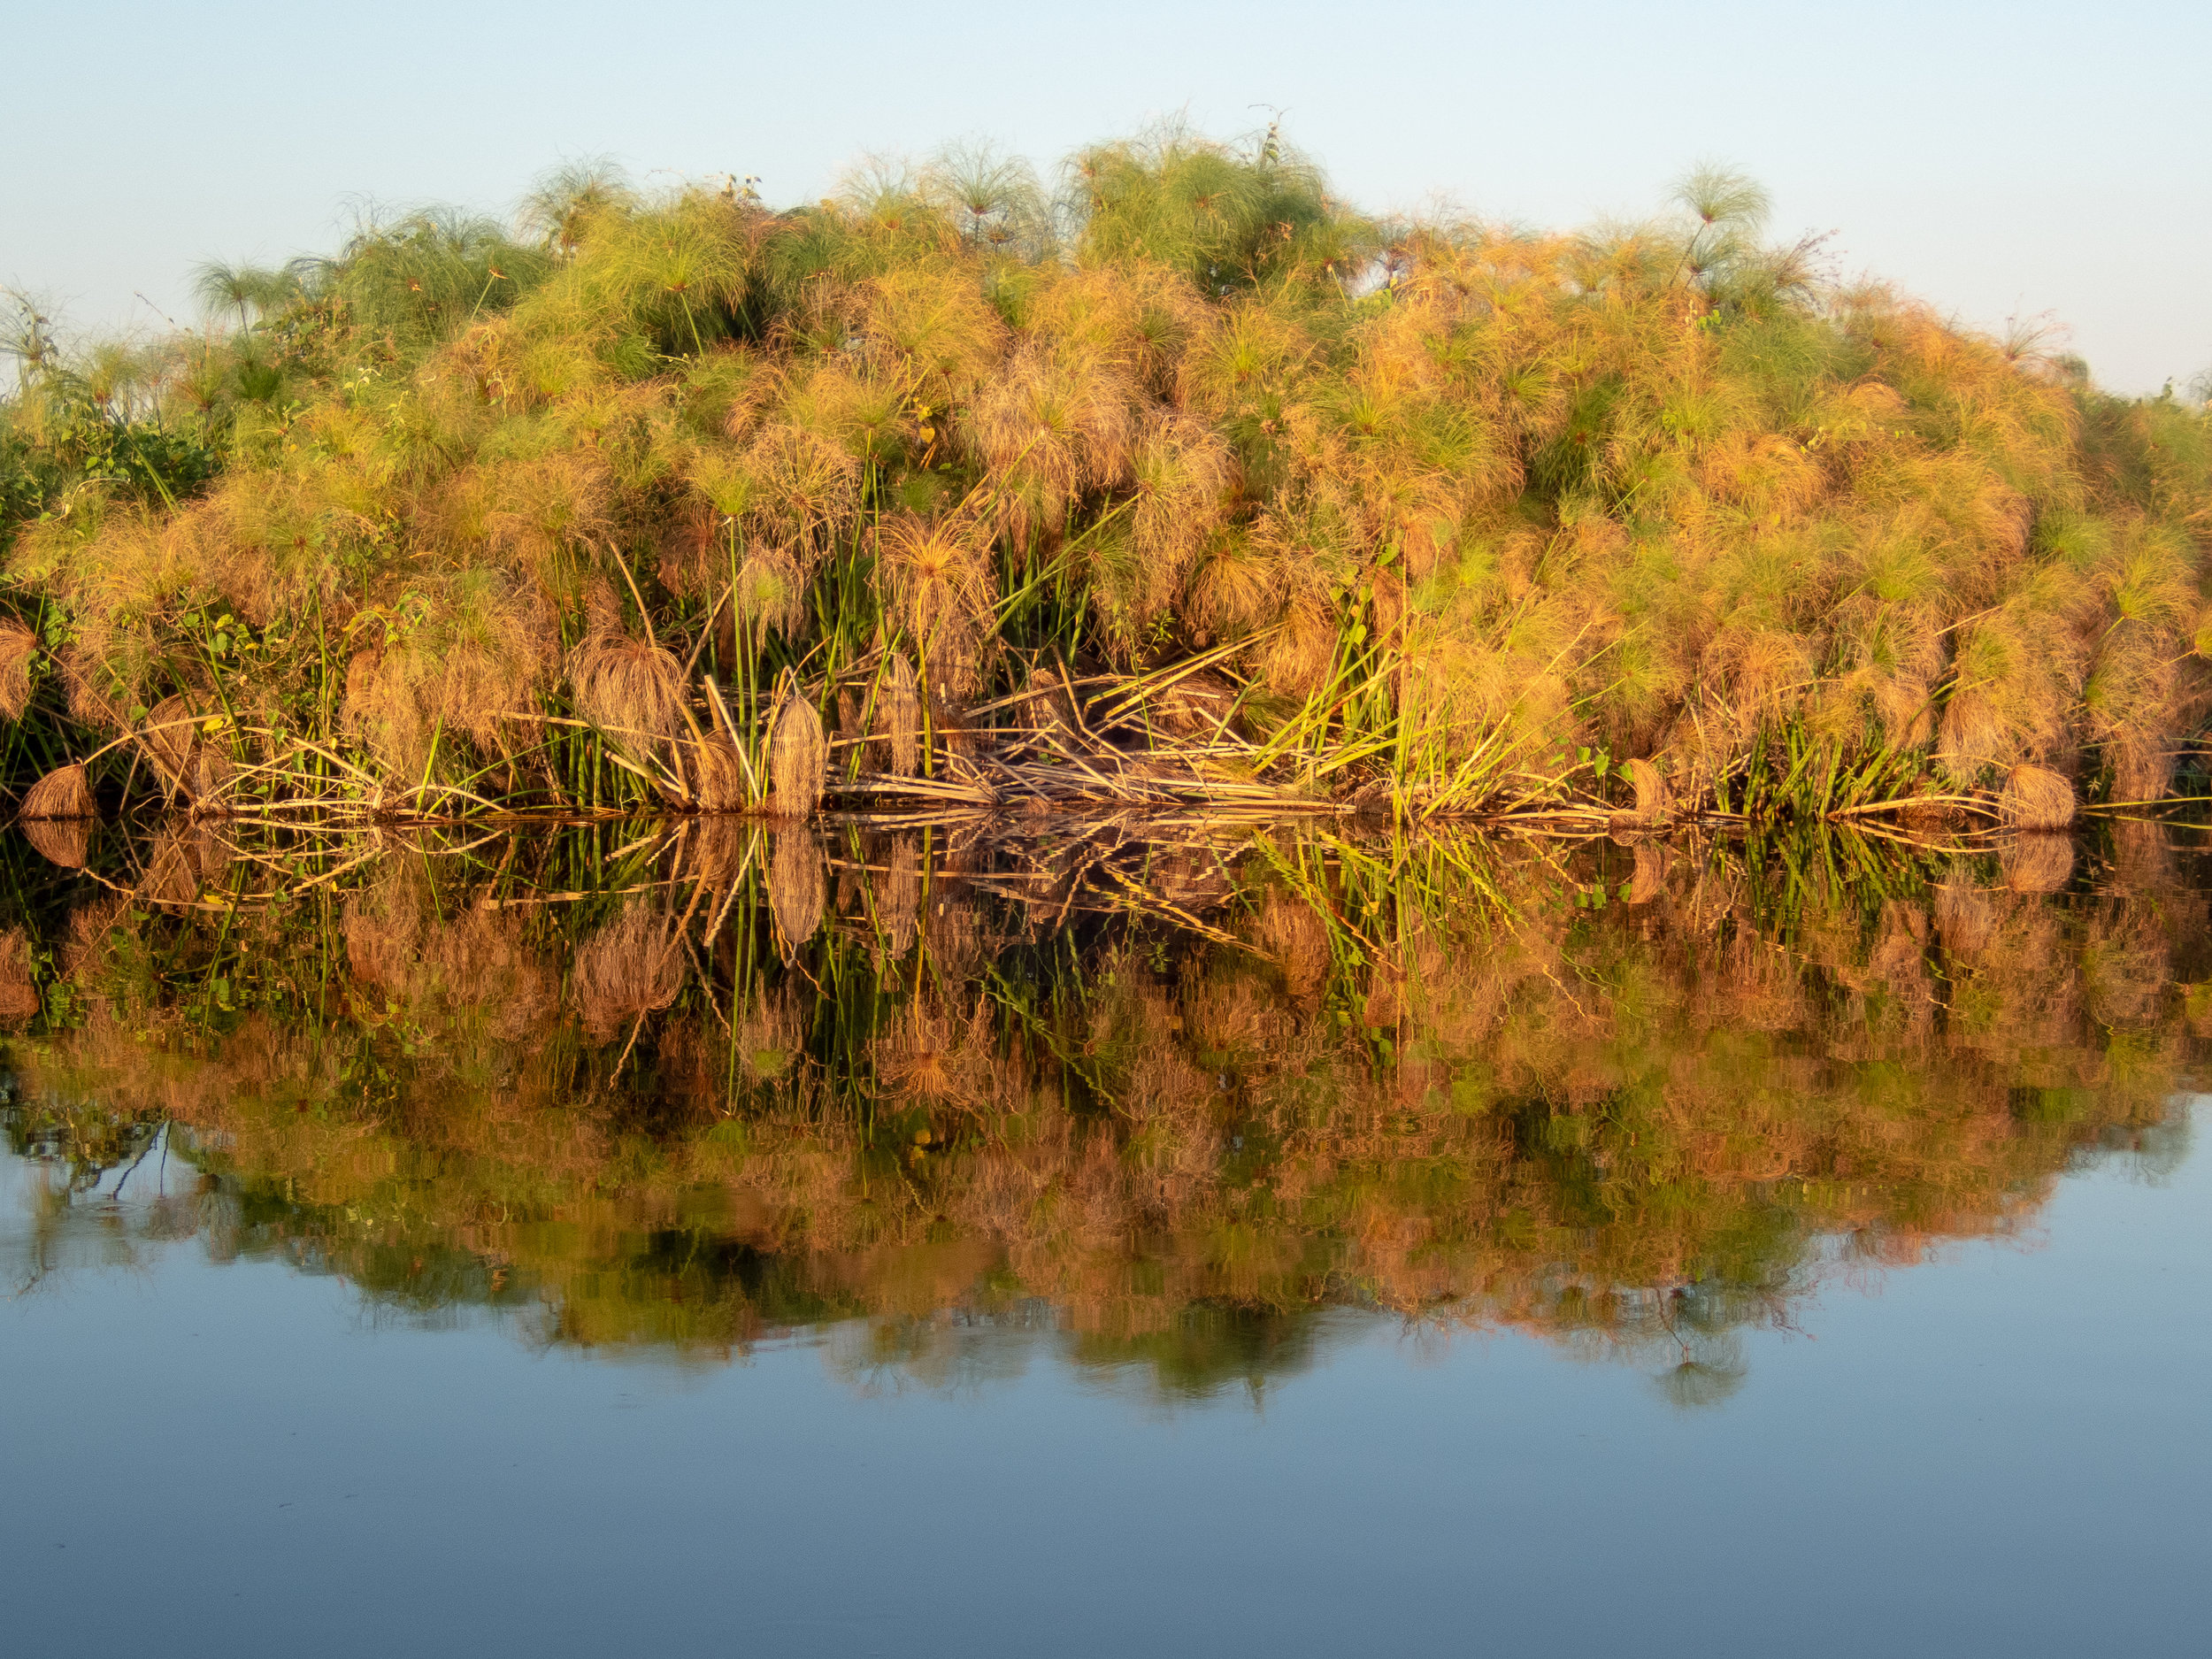 Papyrus reflections, Chobe River, Namibia